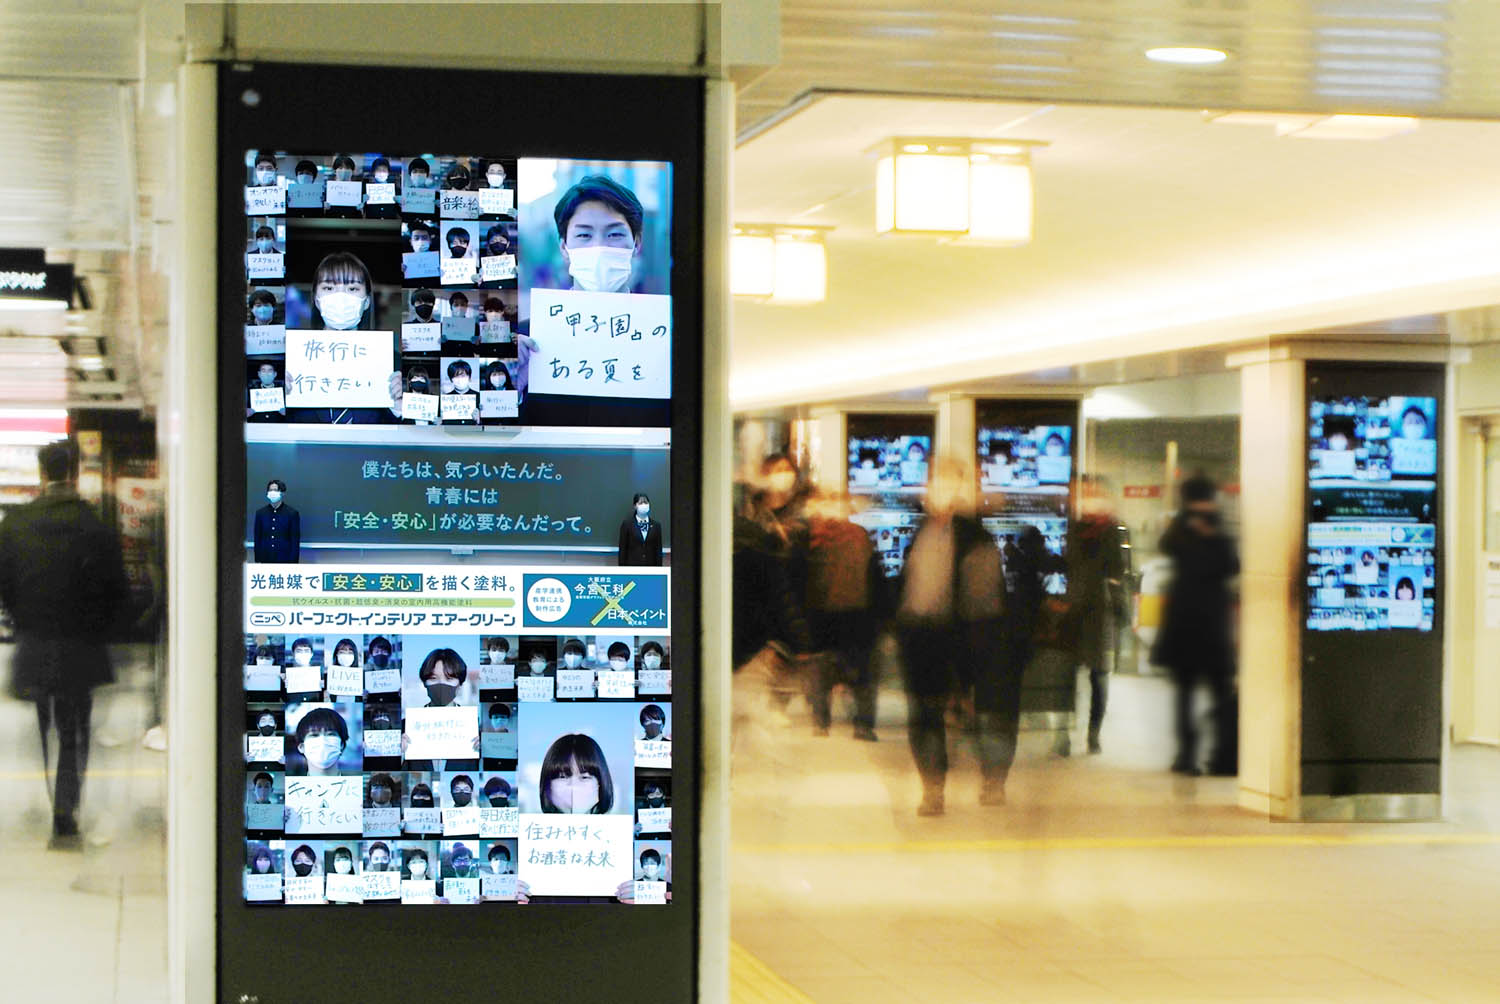 Osaka Metro 梅田駅北改札、中改札のコンコースビジョンにて公開された広告